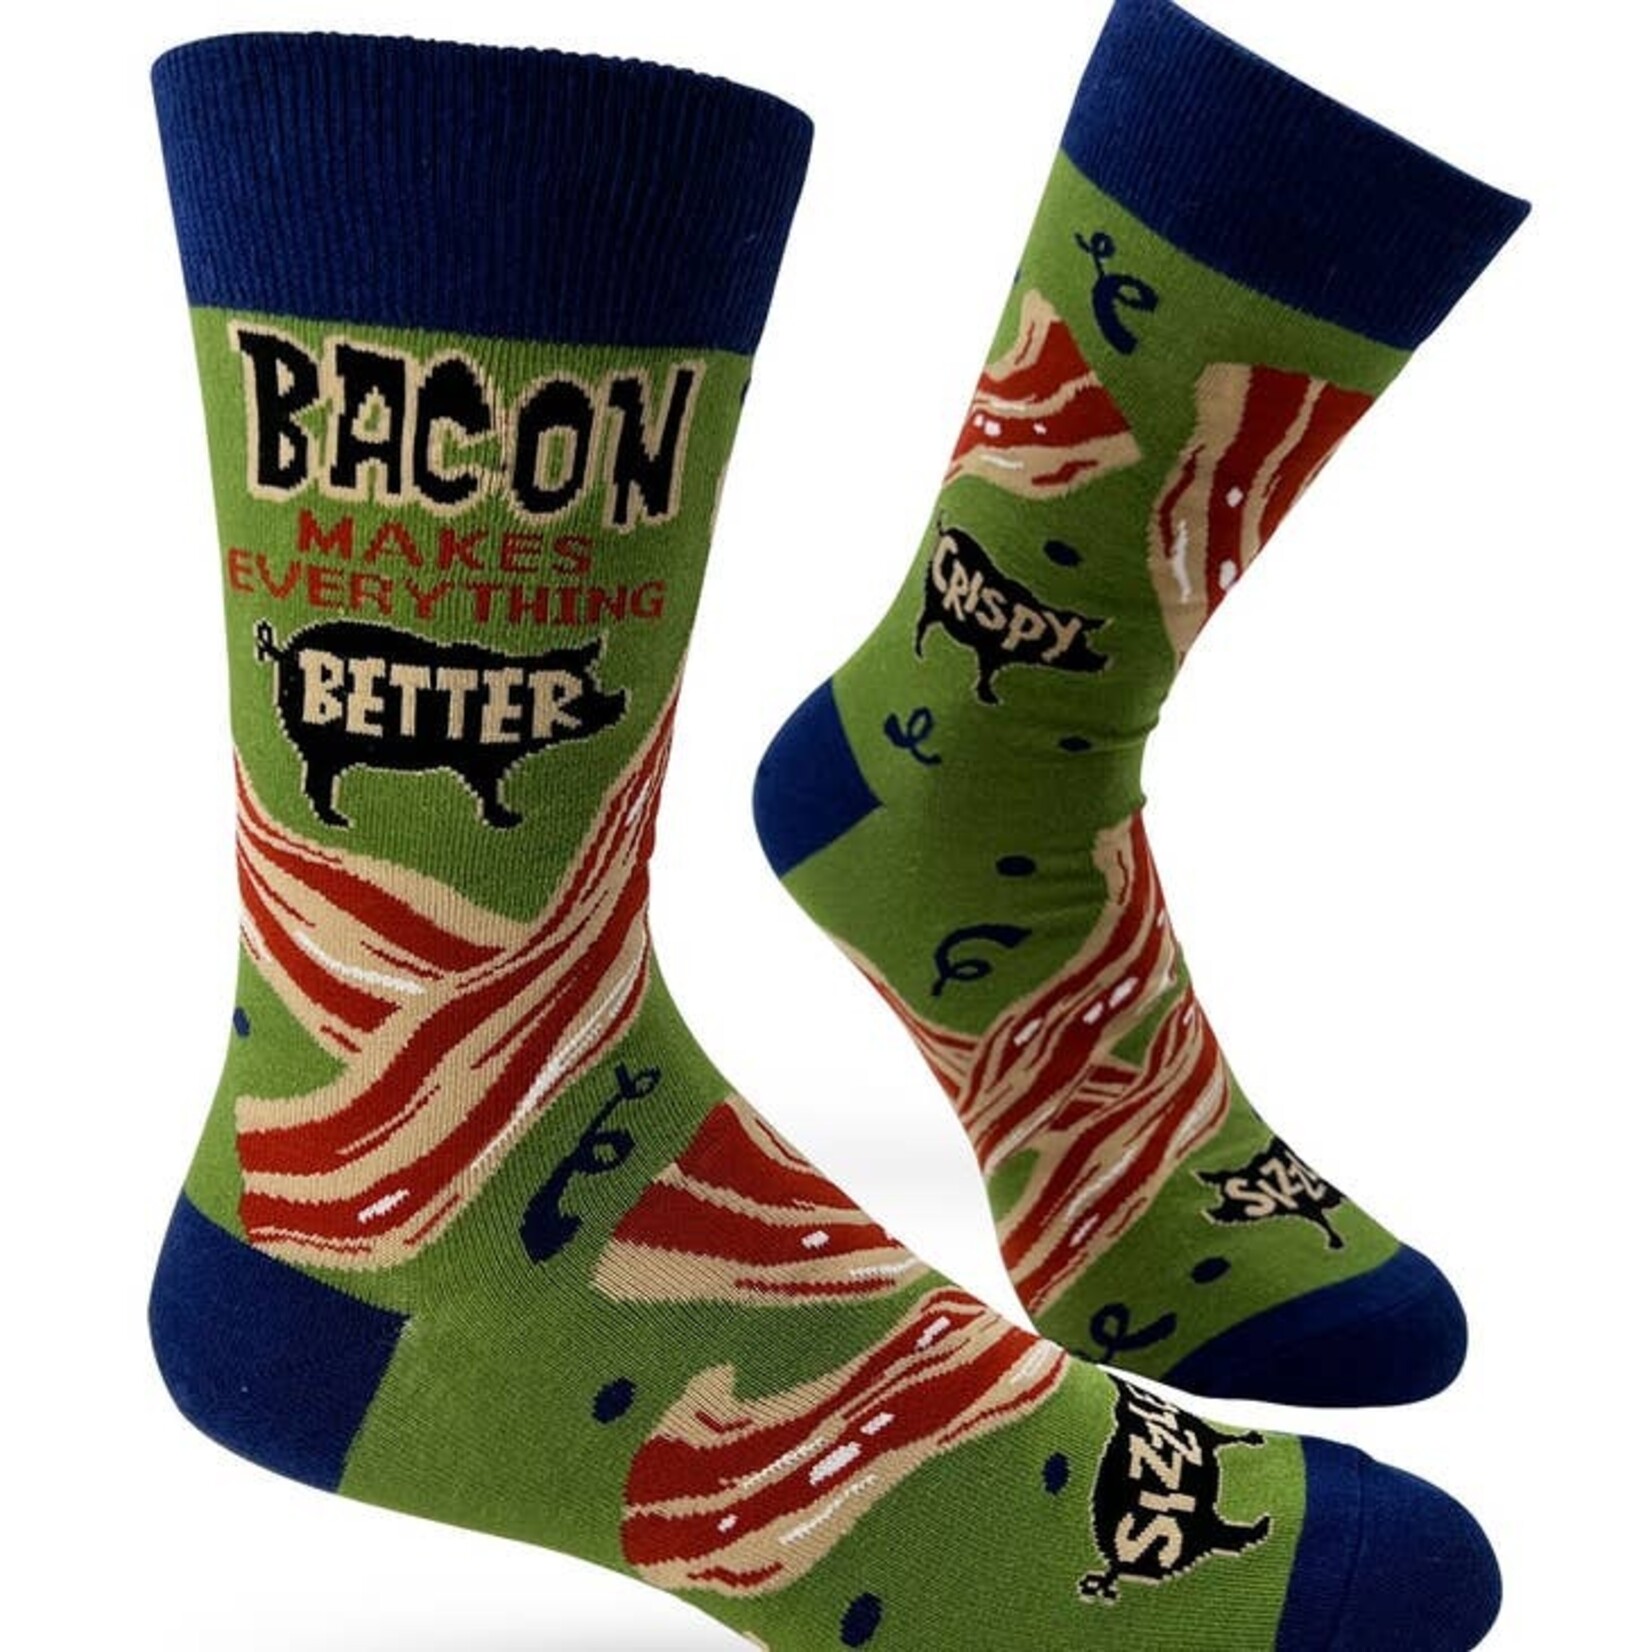 Fabdaz Fabdaz Bacon Makes Everything Better Men's Novelty Crew Socks